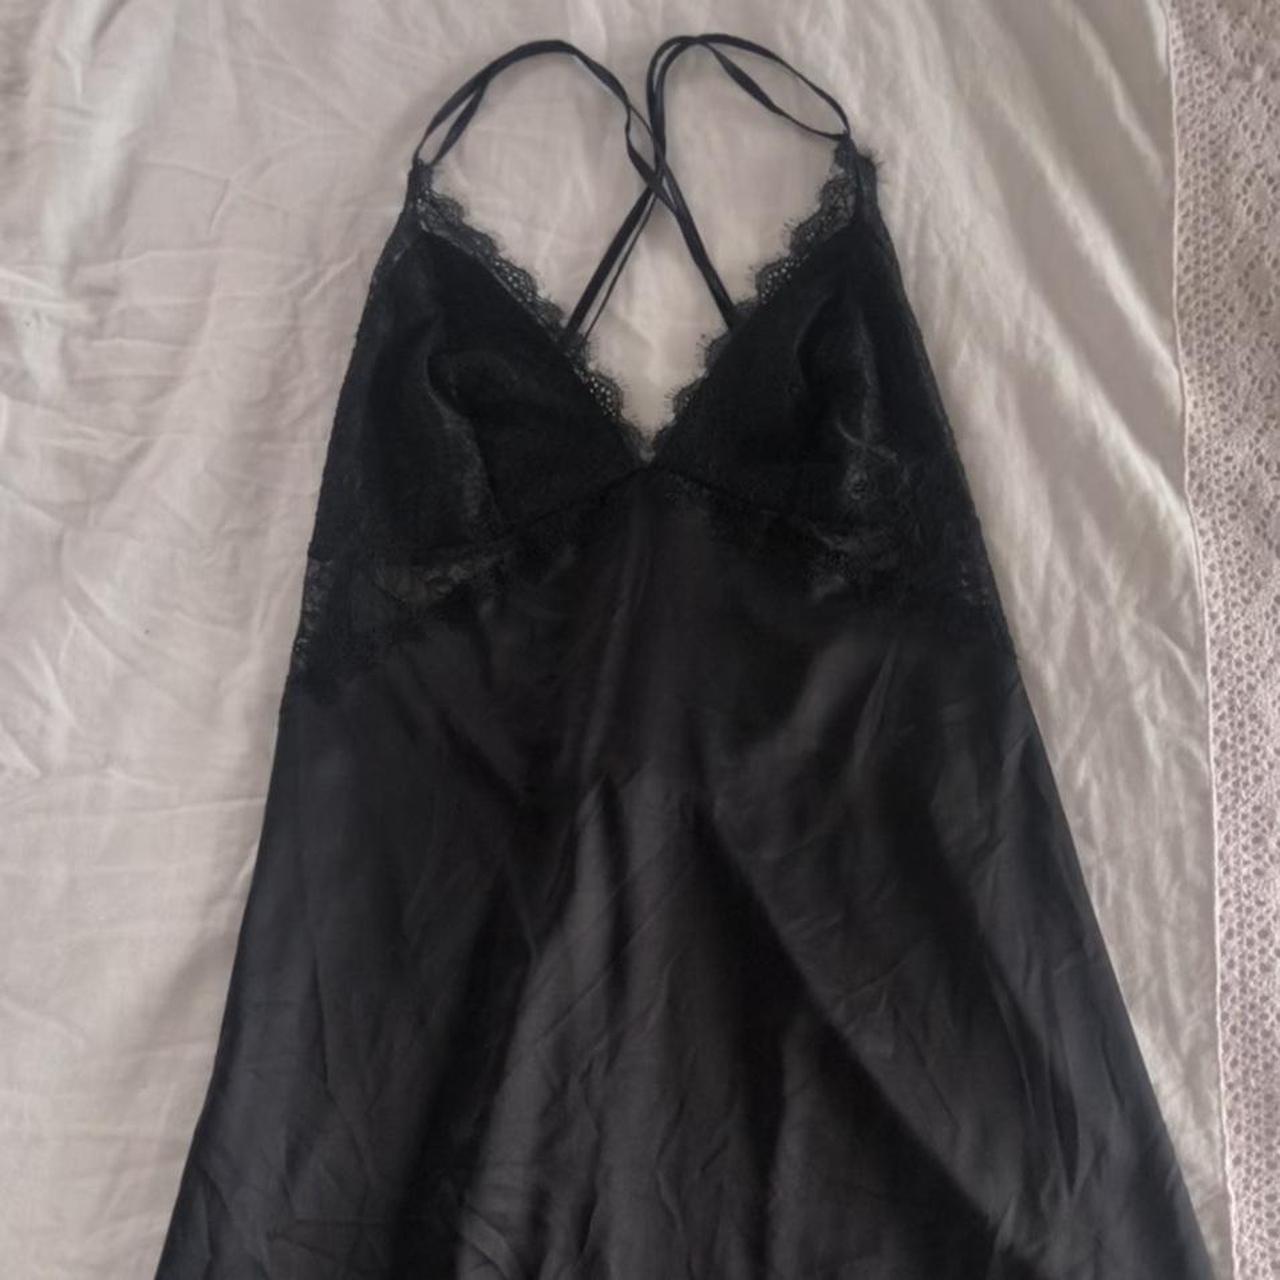 Black Lace Lingerie Slip Dress DEPOP PAYMENTS... - Depop